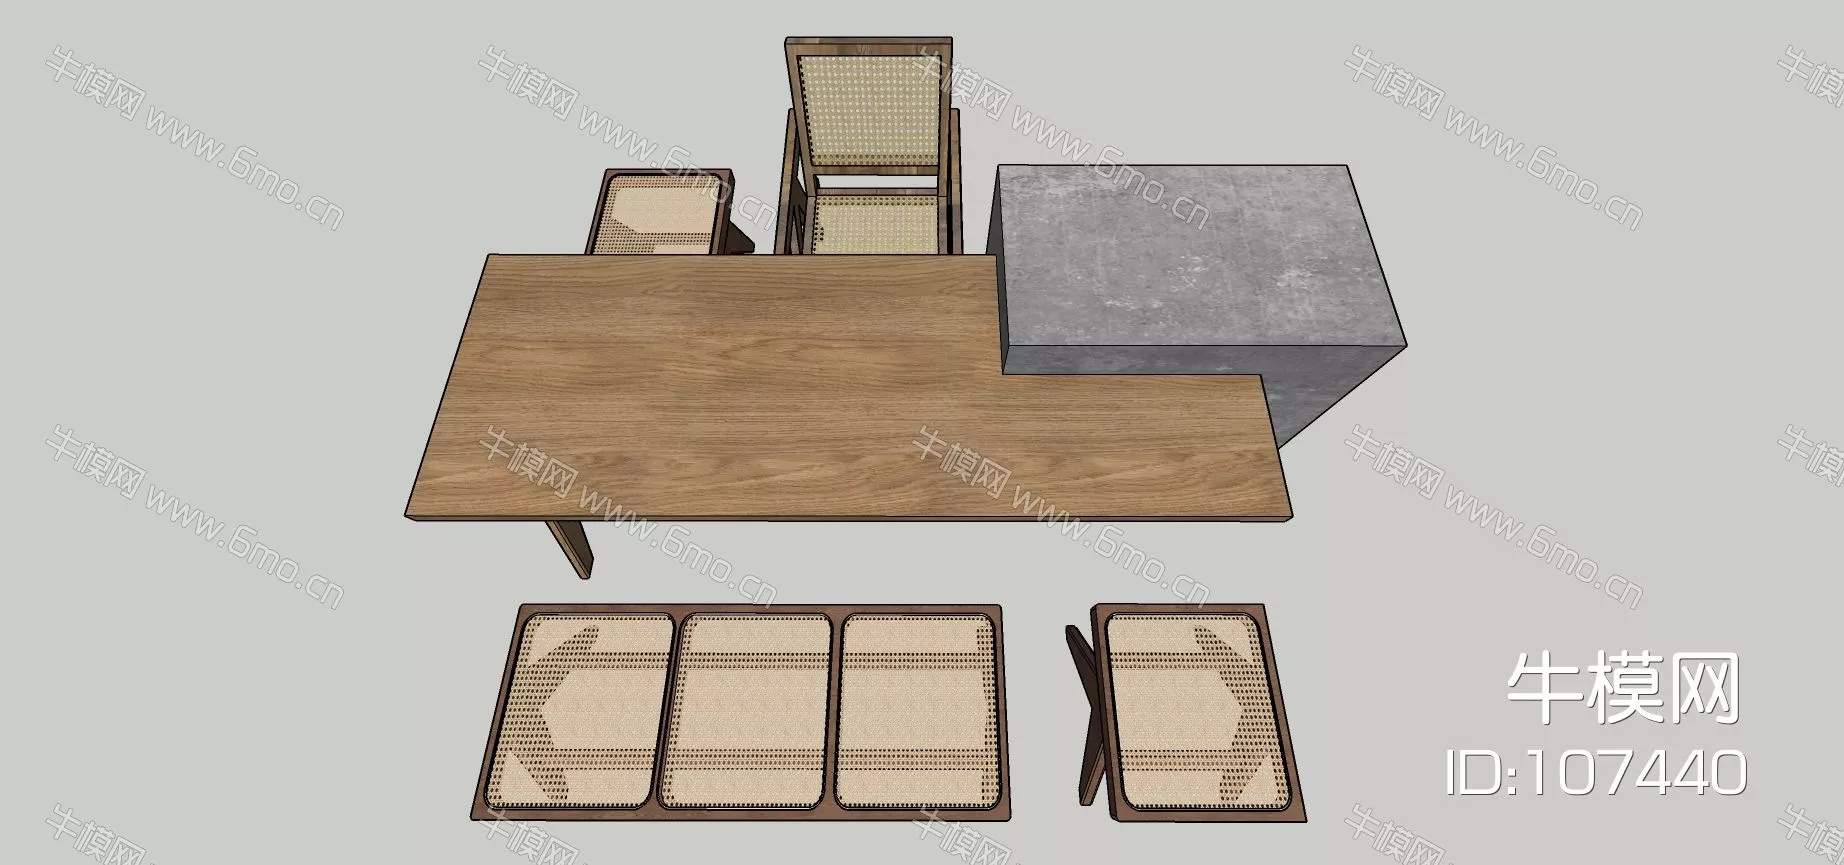 MODERN DINING TABLE SET - SKETCHUP 3D MODEL - ENSCAPE - 107440